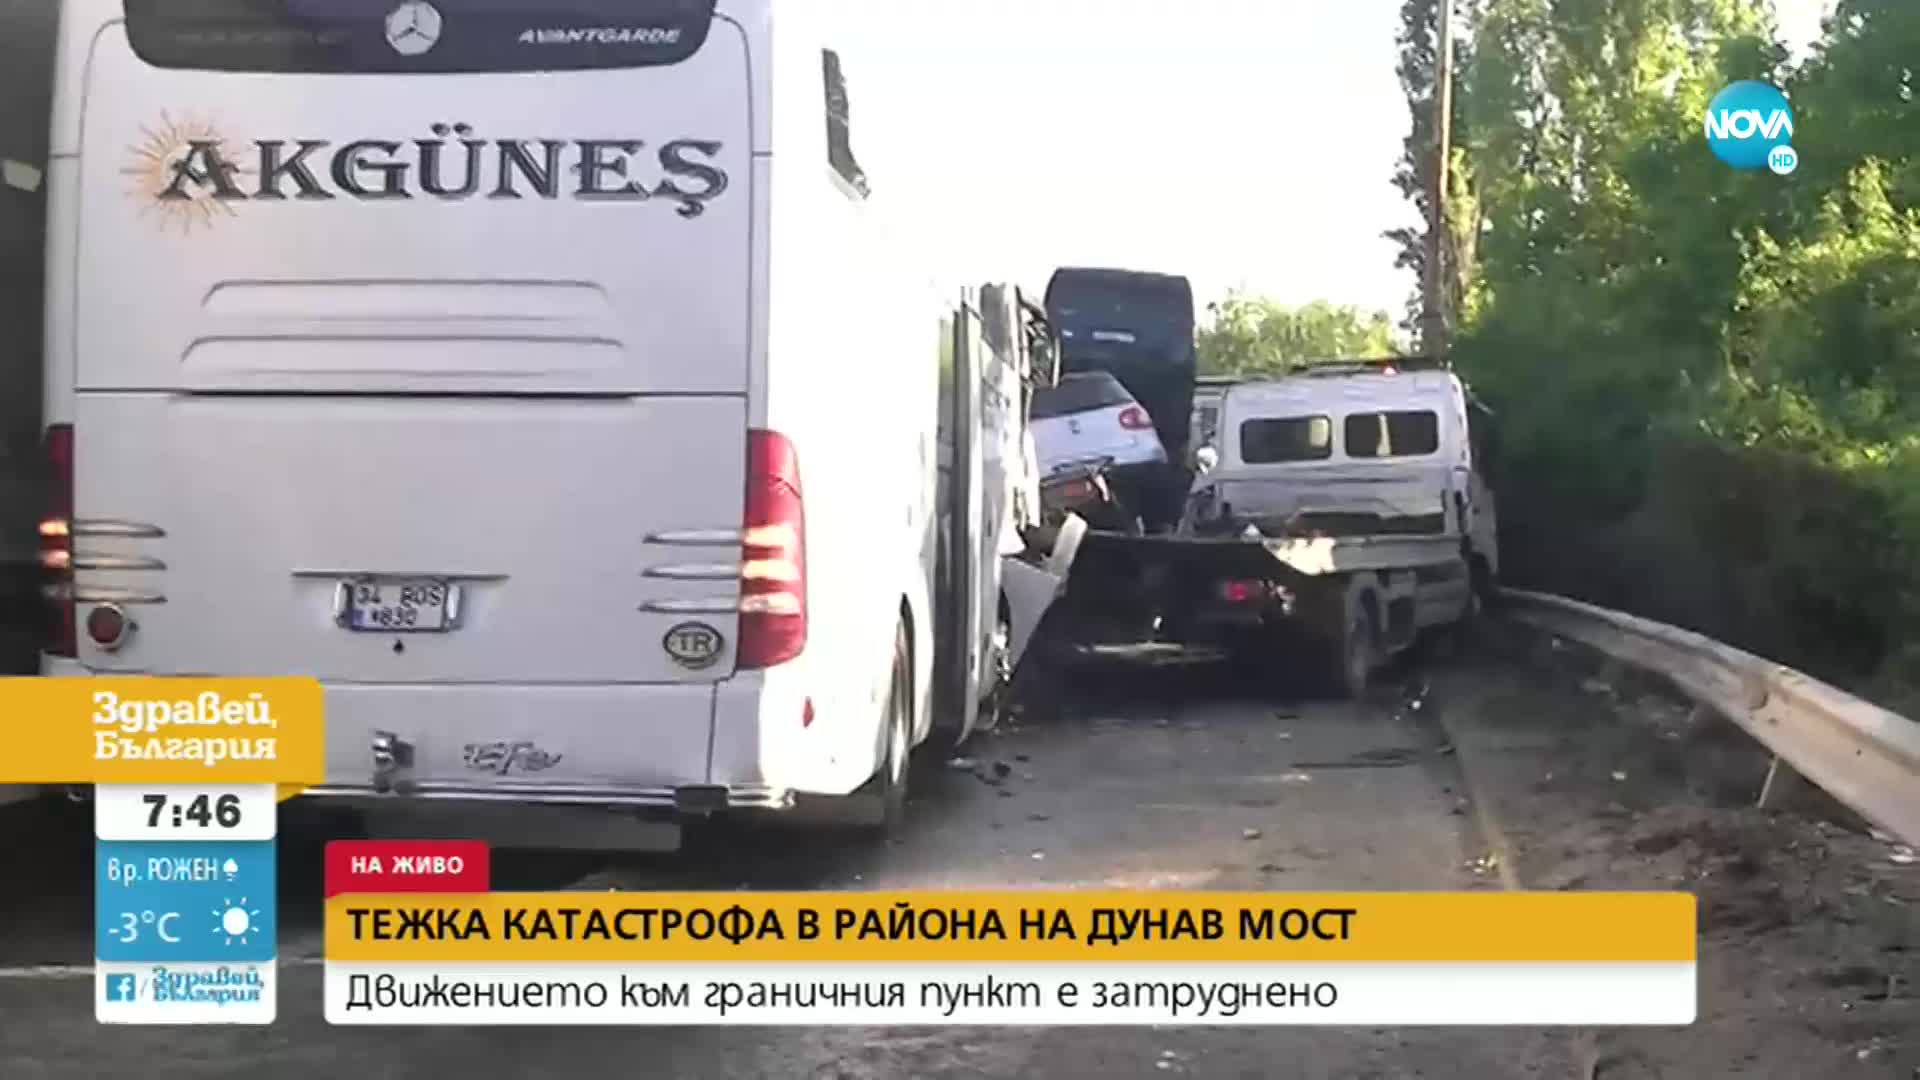 Автовоз, цистерна и автобус се удариха край „Дунав мост”